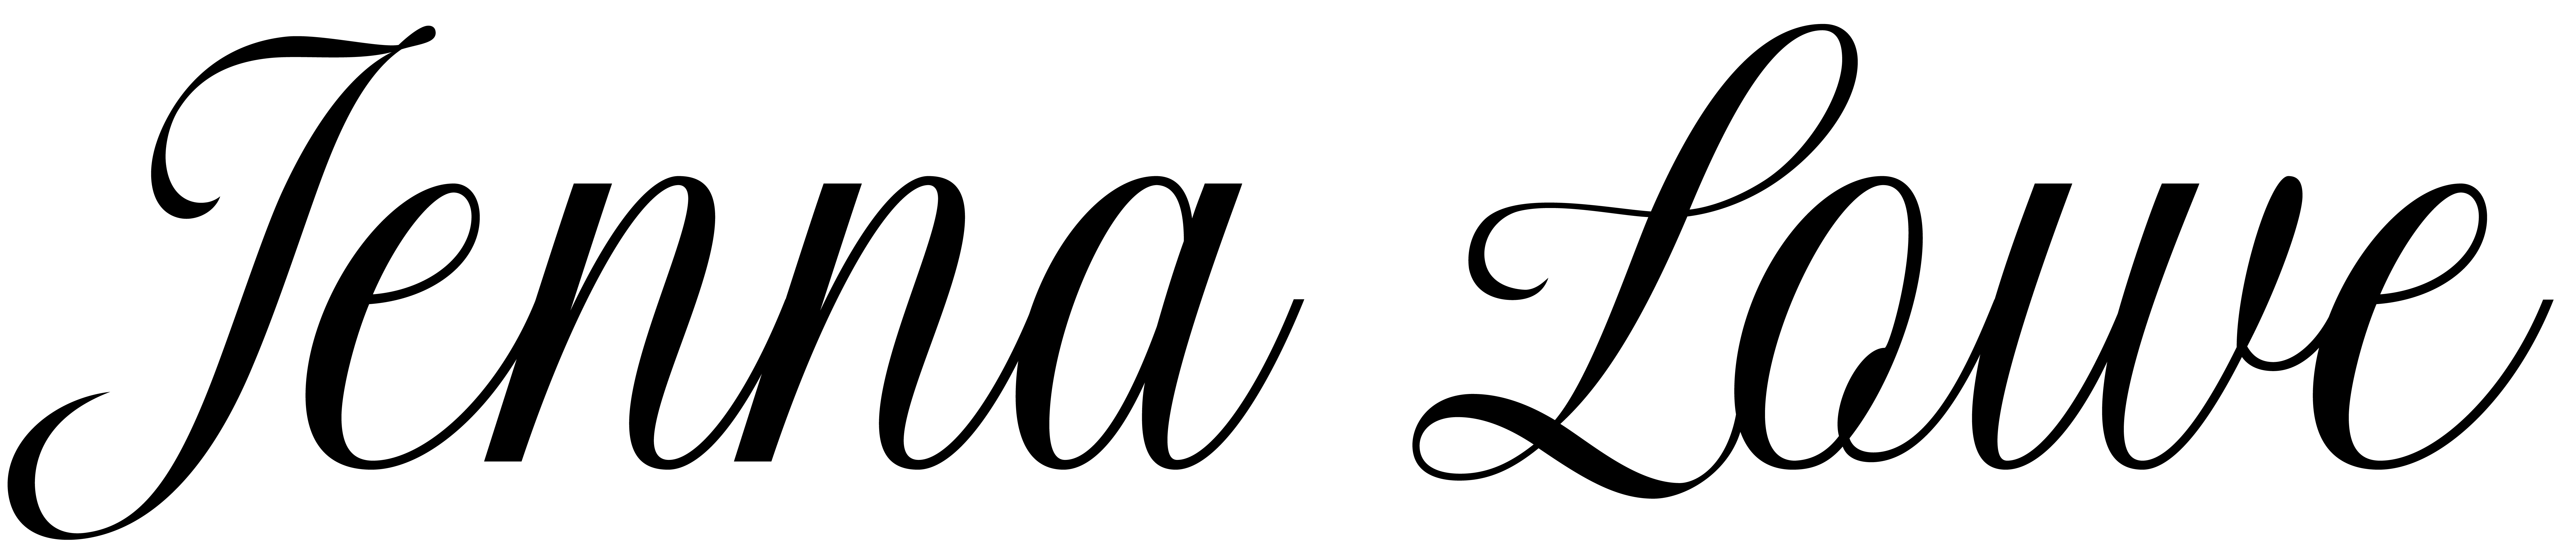 Jenna Lowe logo